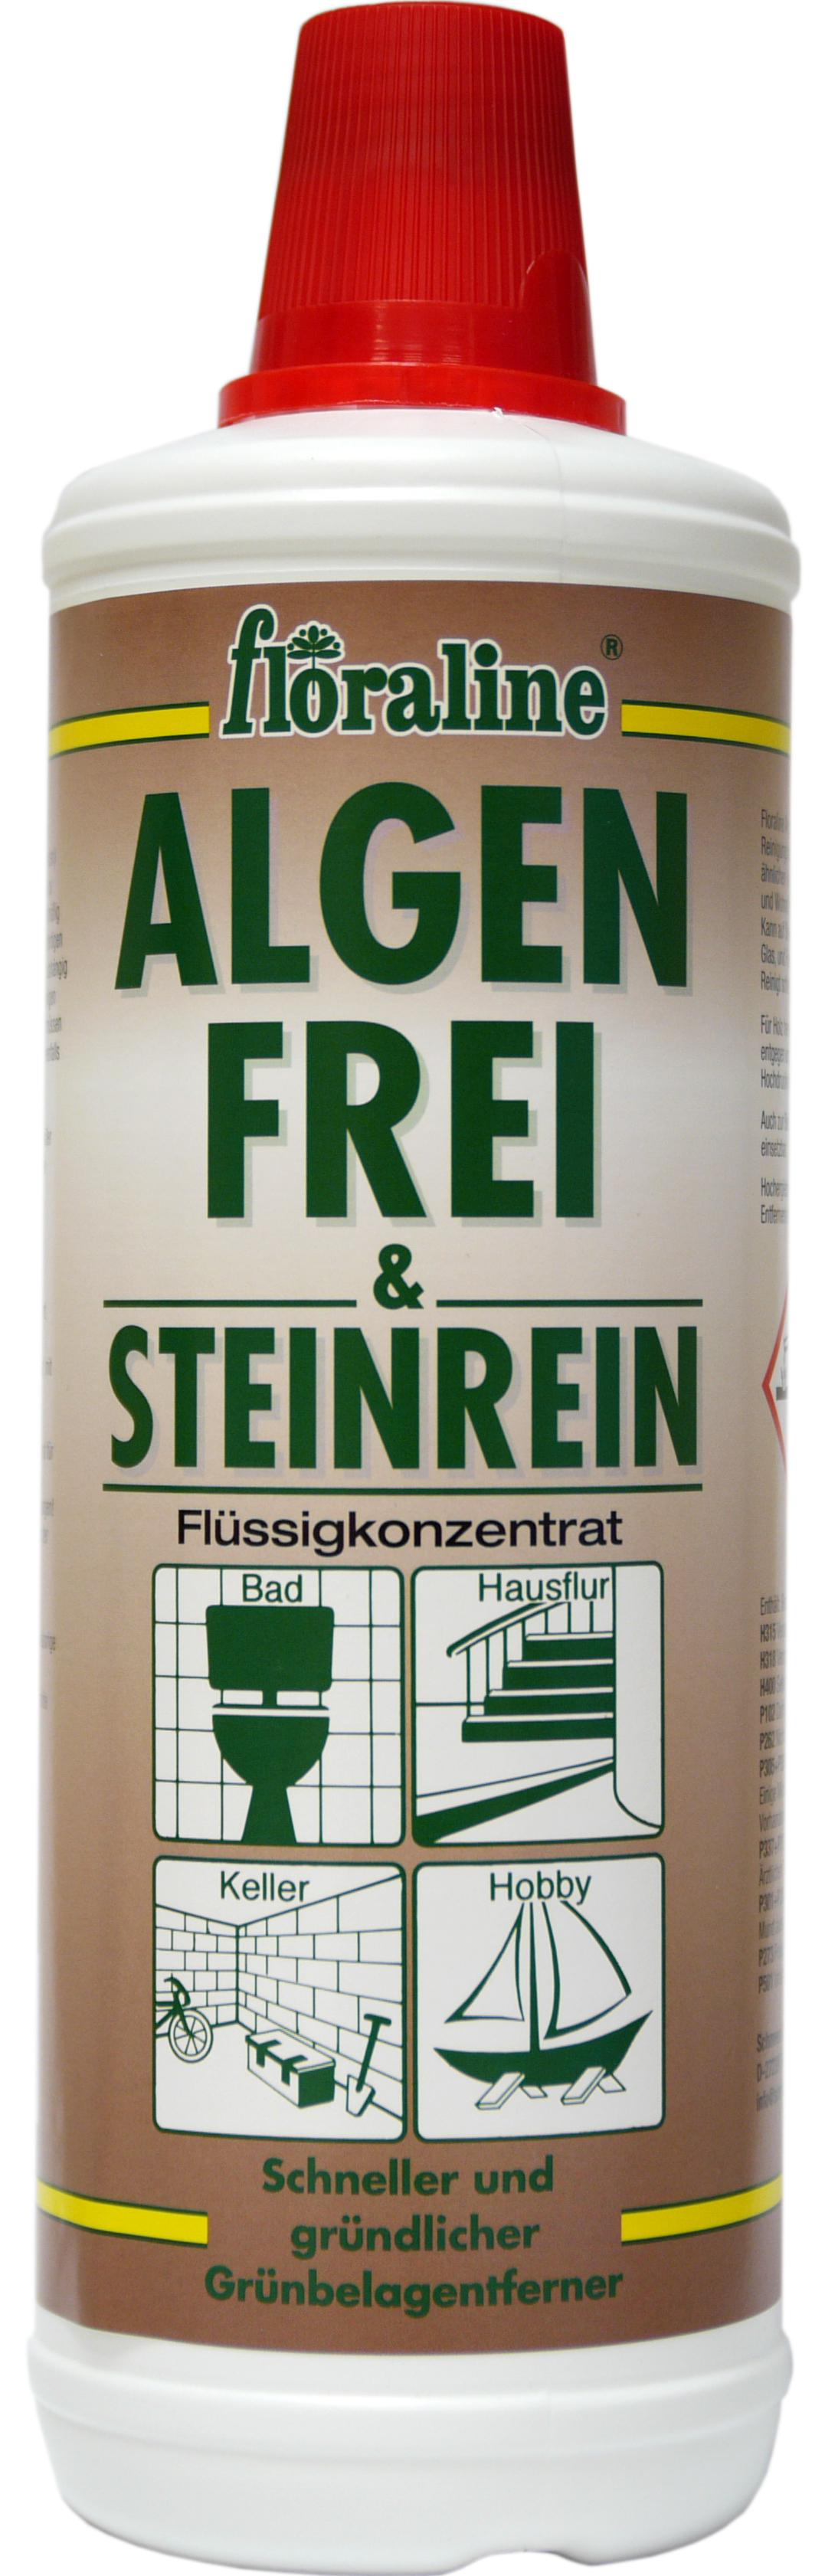 02220 - Algenfrei & Steinrein 1000 ml BIOZID - Konzentrat